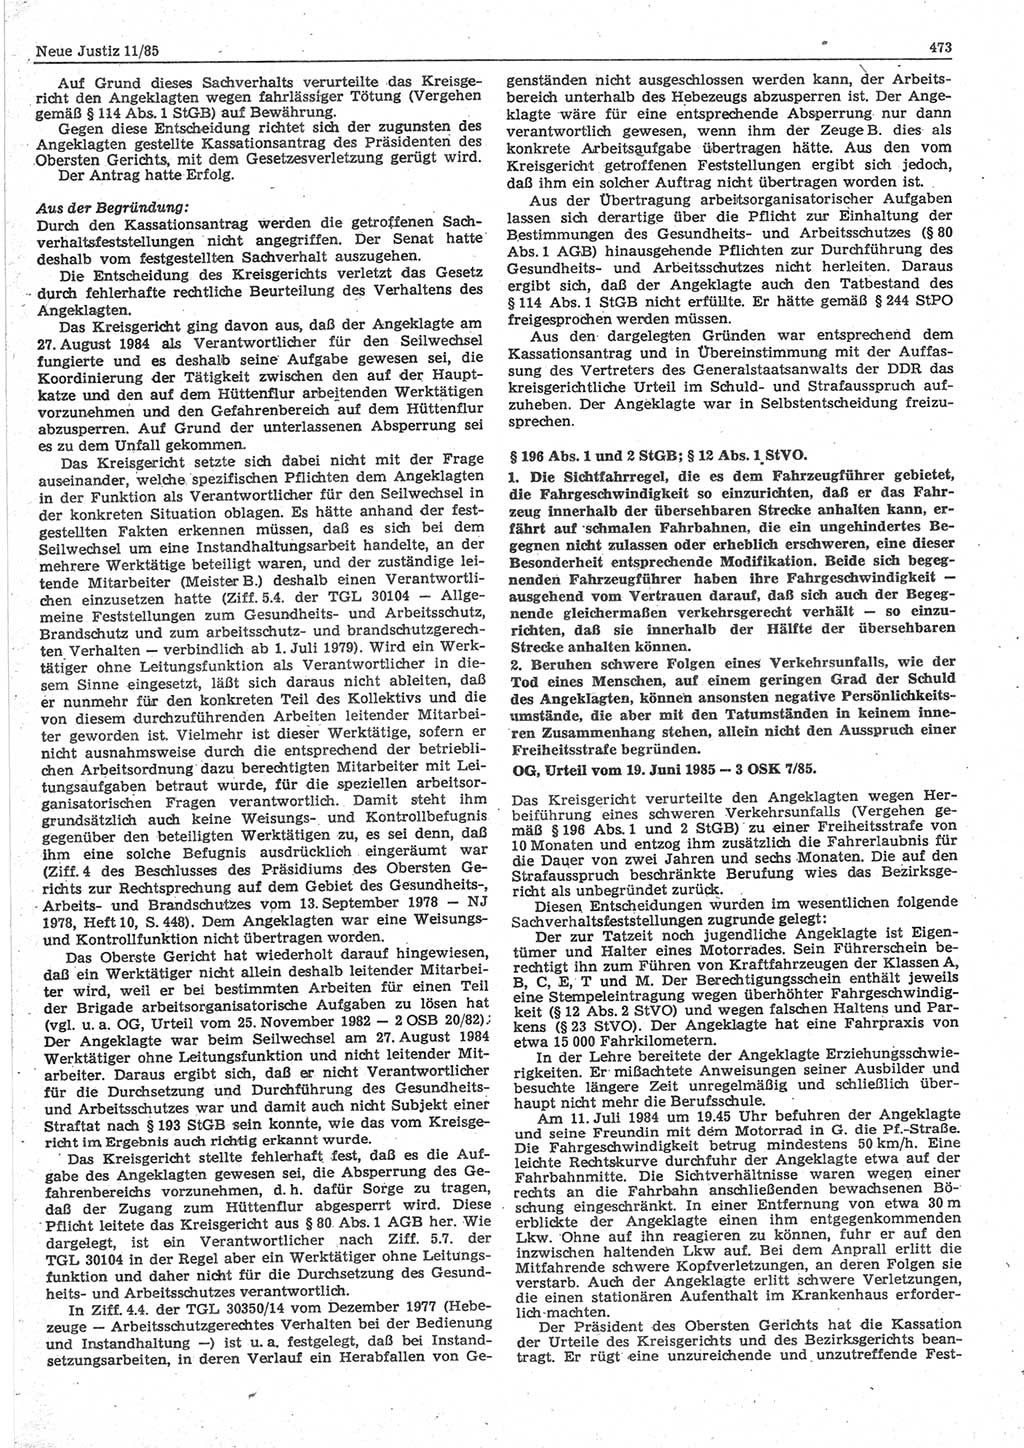 Neue Justiz (NJ), Zeitschrift für sozialistisches Recht und Gesetzlichkeit [Deutsche Demokratische Republik (DDR)], 39. Jahrgang 1985, Seite 473 (NJ DDR 1985, S. 473)